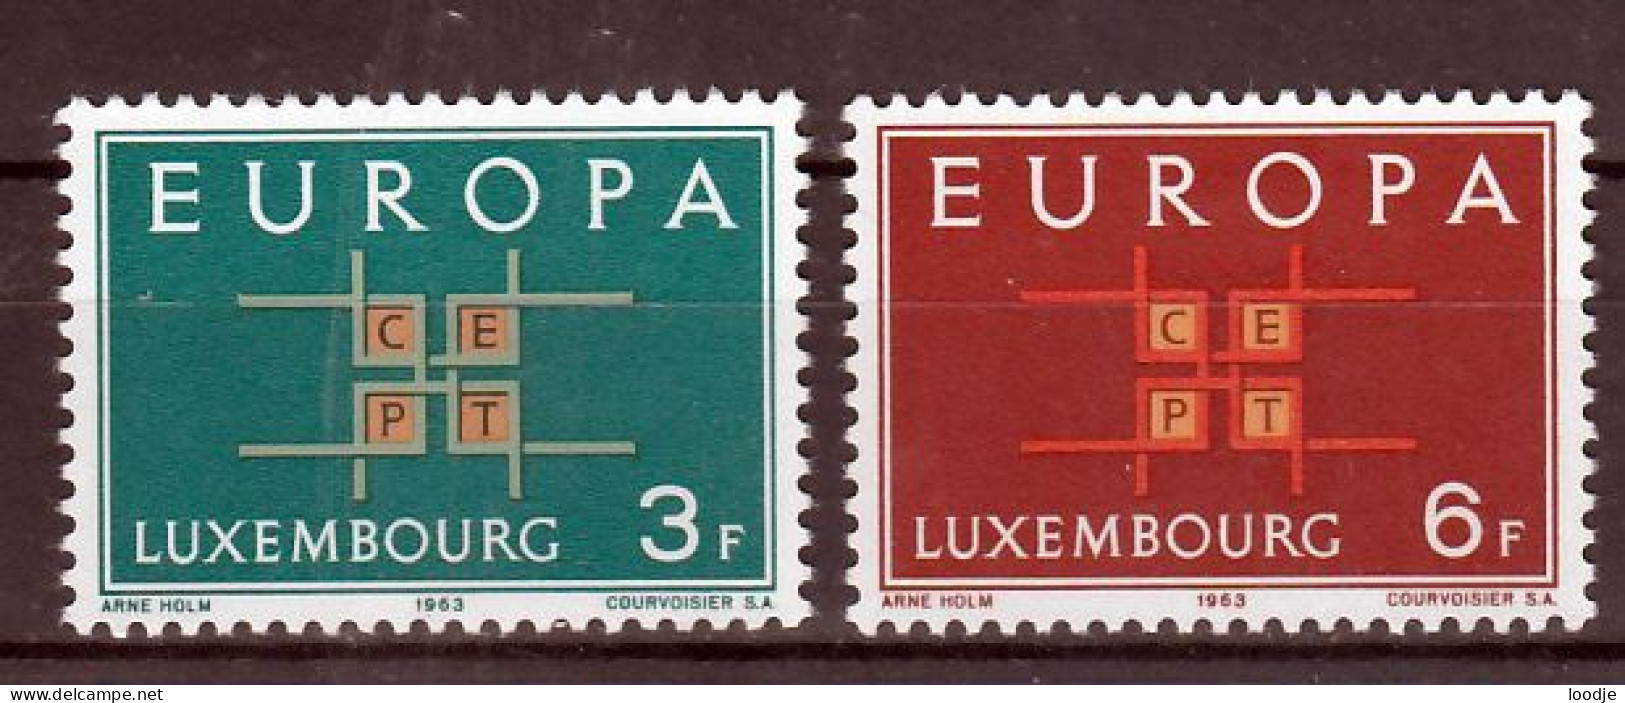 Luxemburg Europa Cept 1963 Postfris - 1963